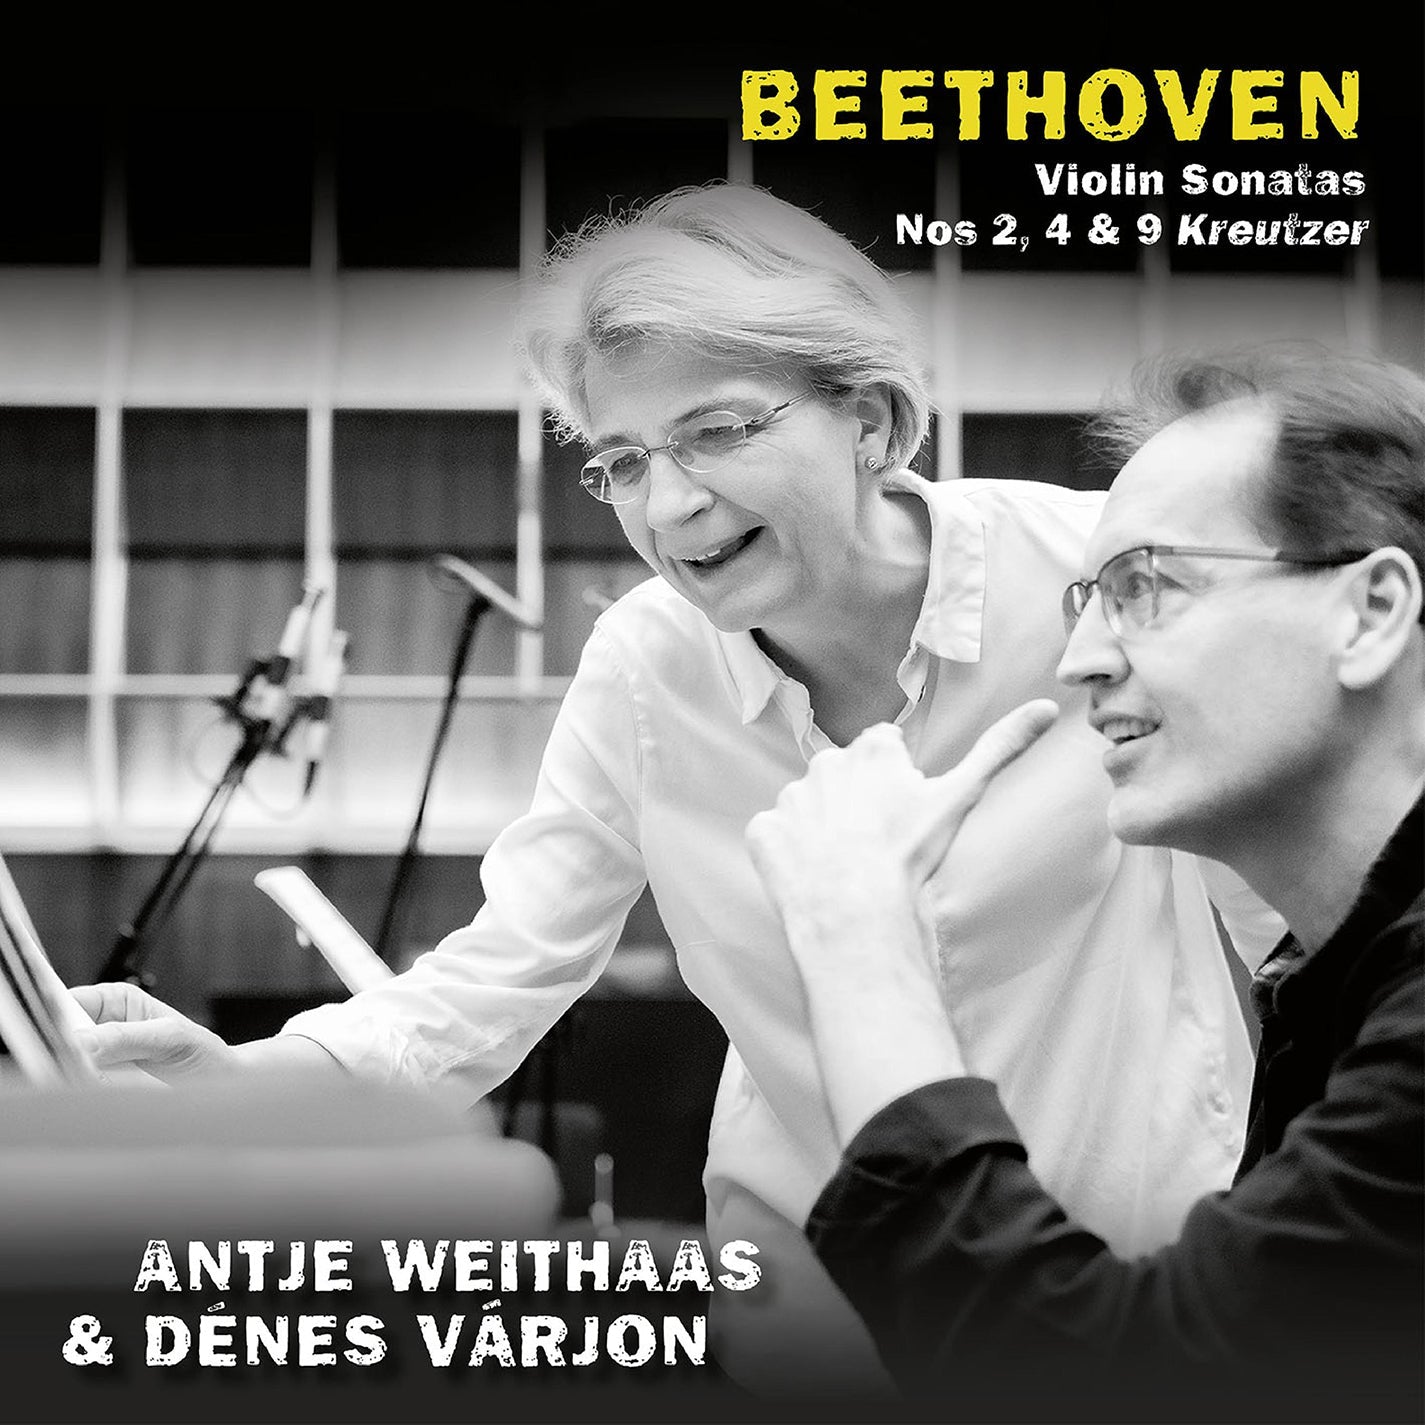 Beethoven: Violin Sonatas Nos 2, 4 & 9 "Kreutzer"